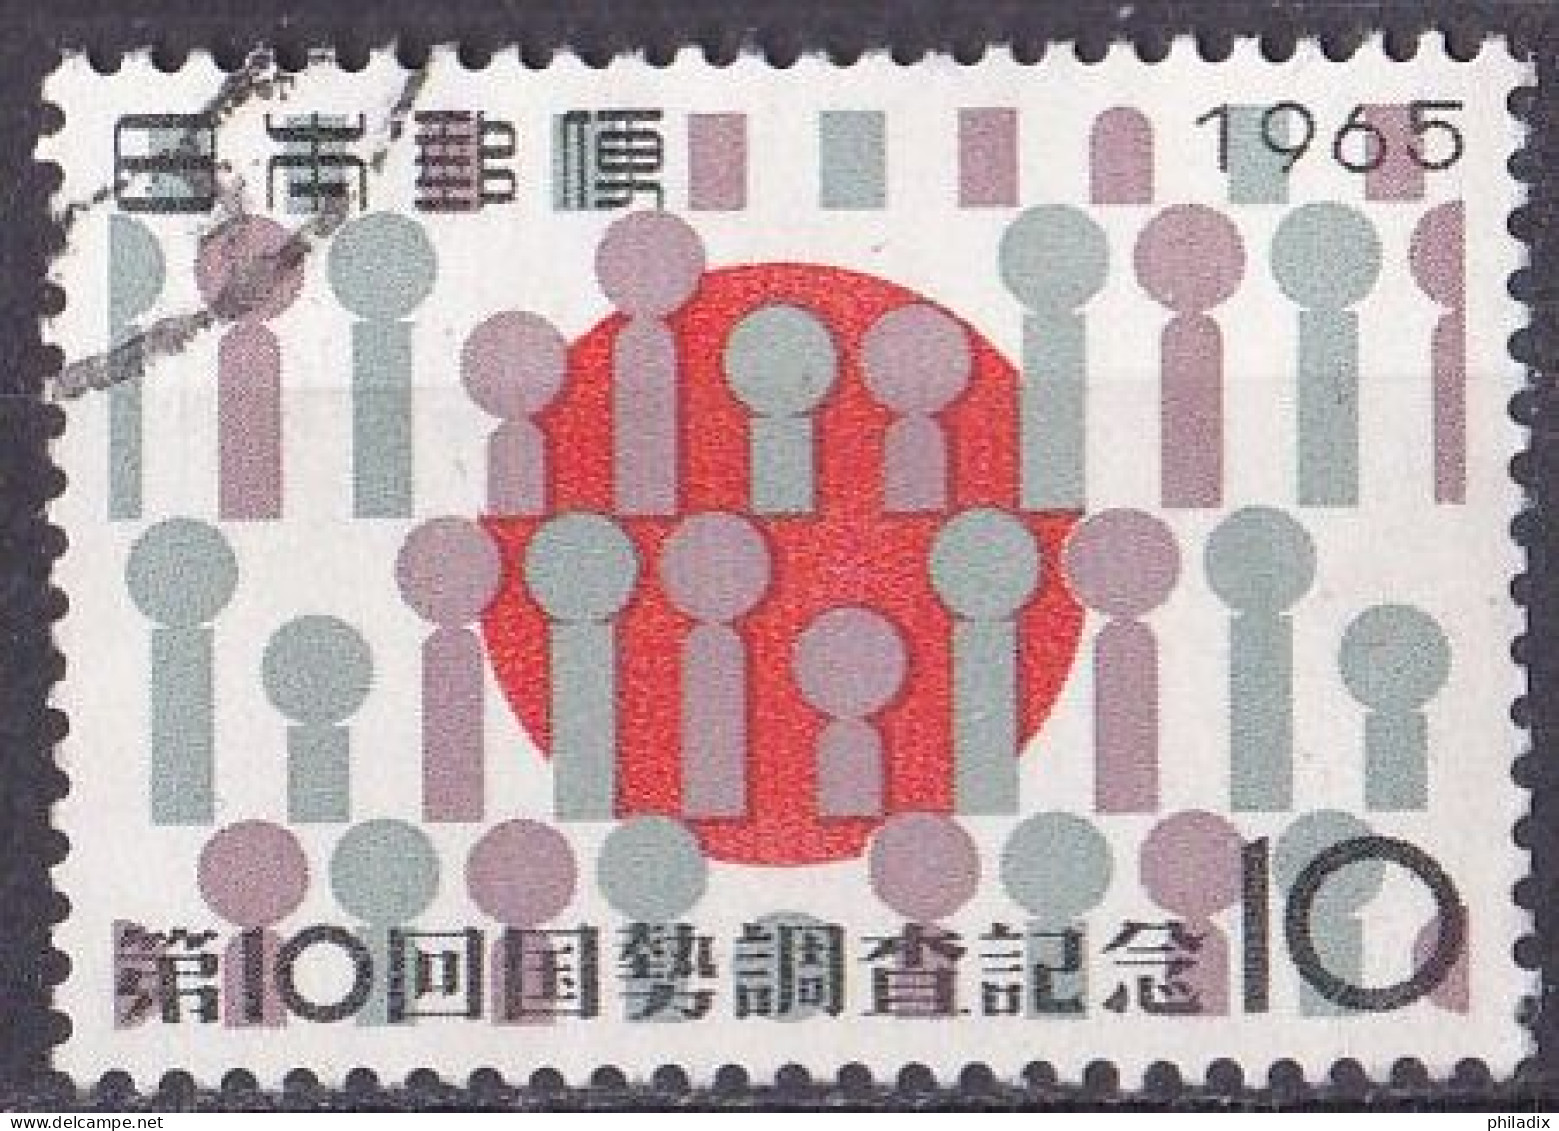 Japan Marke Von 1965 O/used (A4-4) - Gebraucht